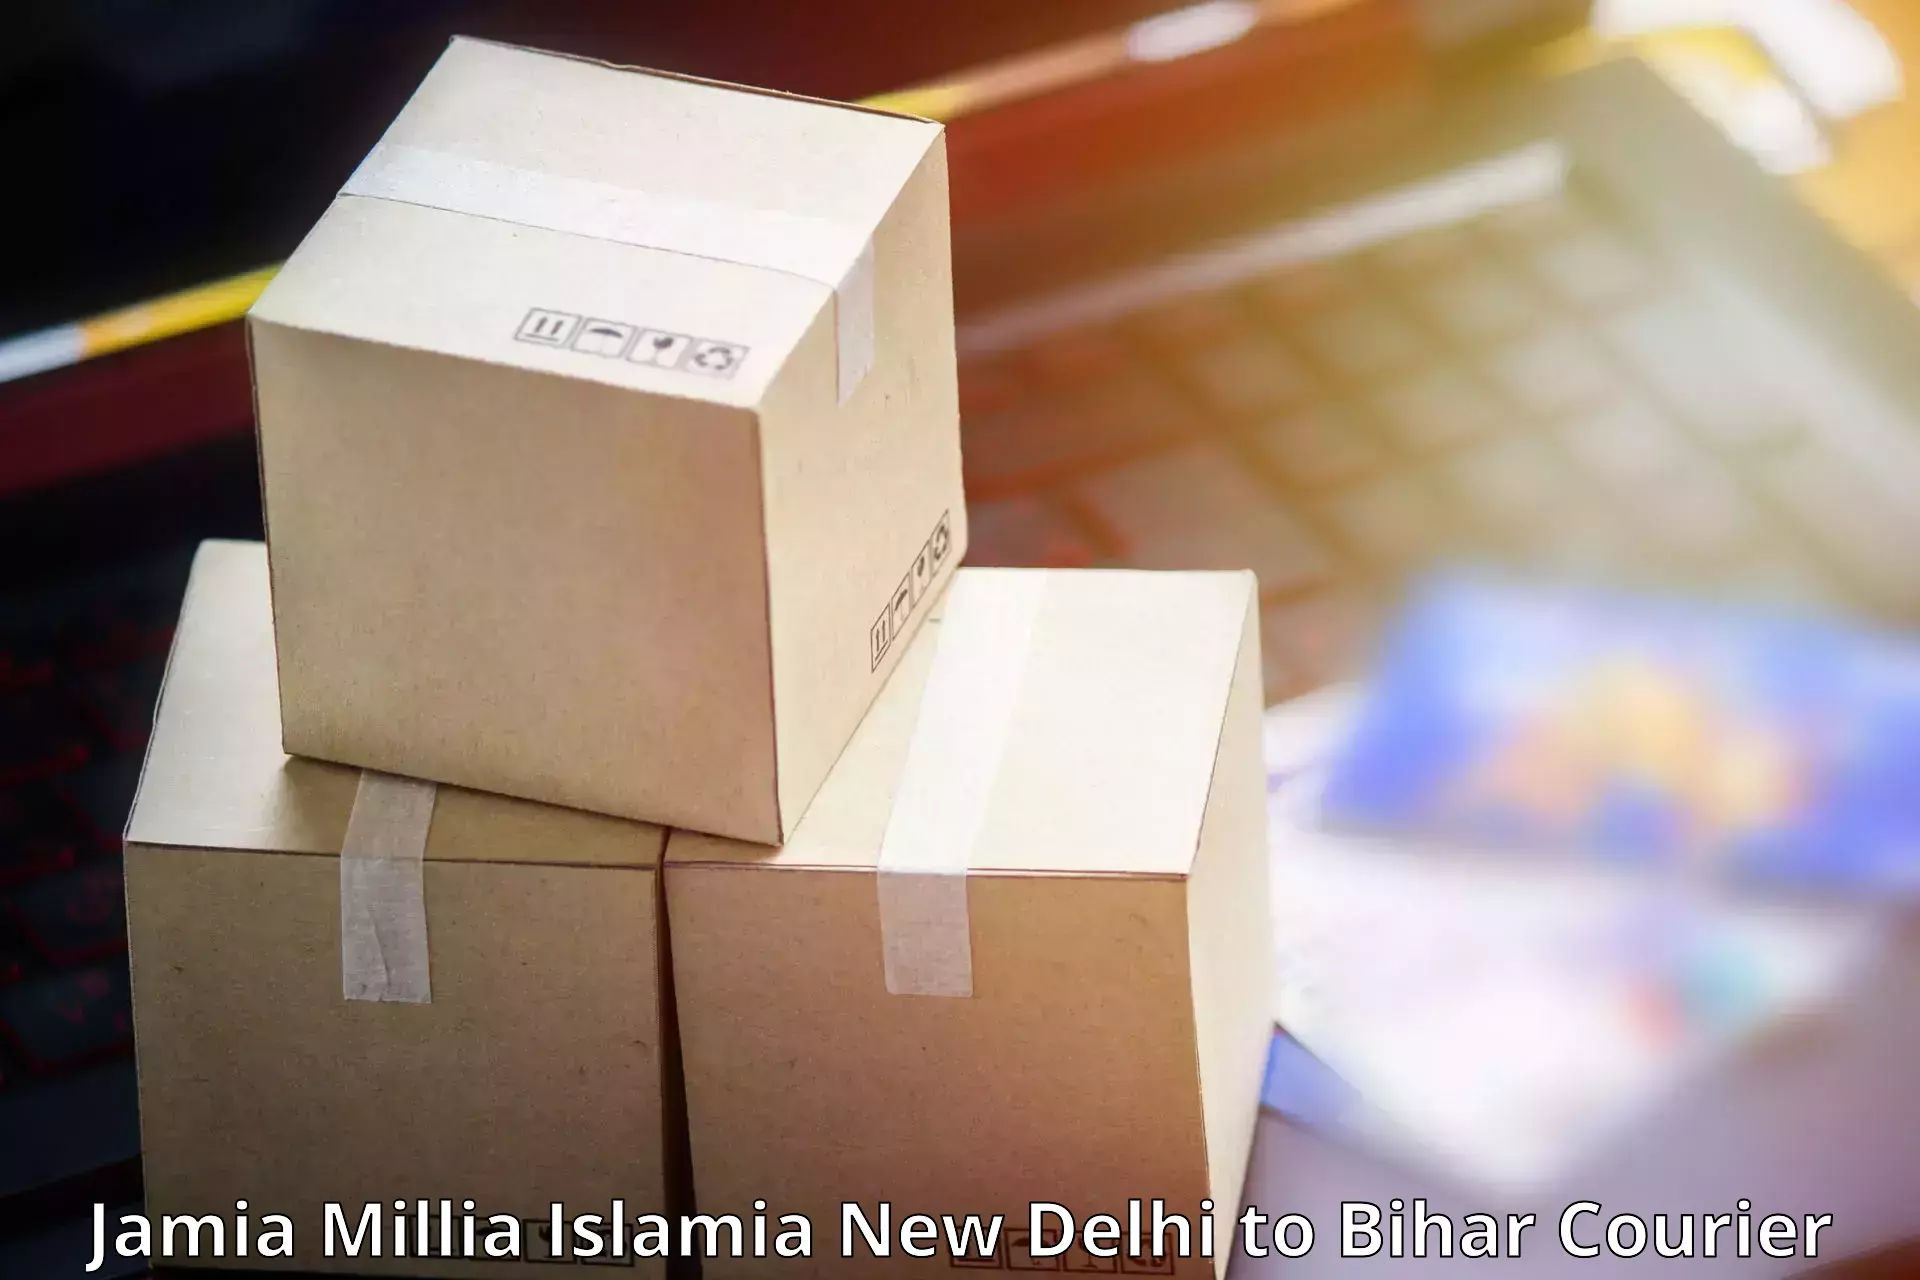 Express postal services Jamia Millia Islamia New Delhi to Nuaon